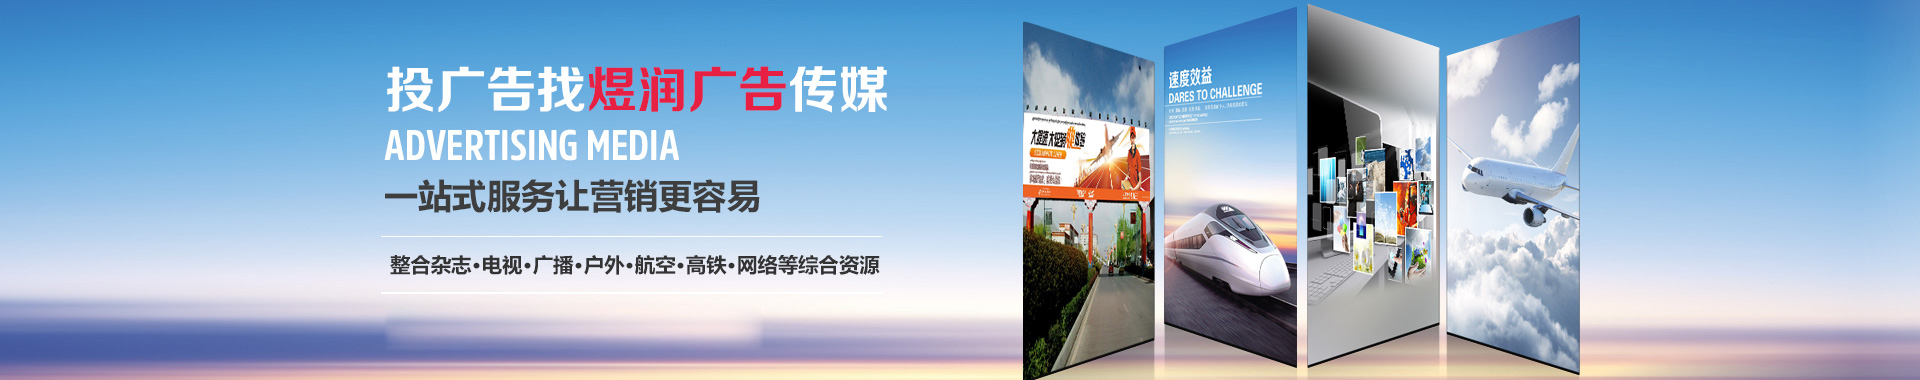 杭州交通经济广播广告电话广告投放价格